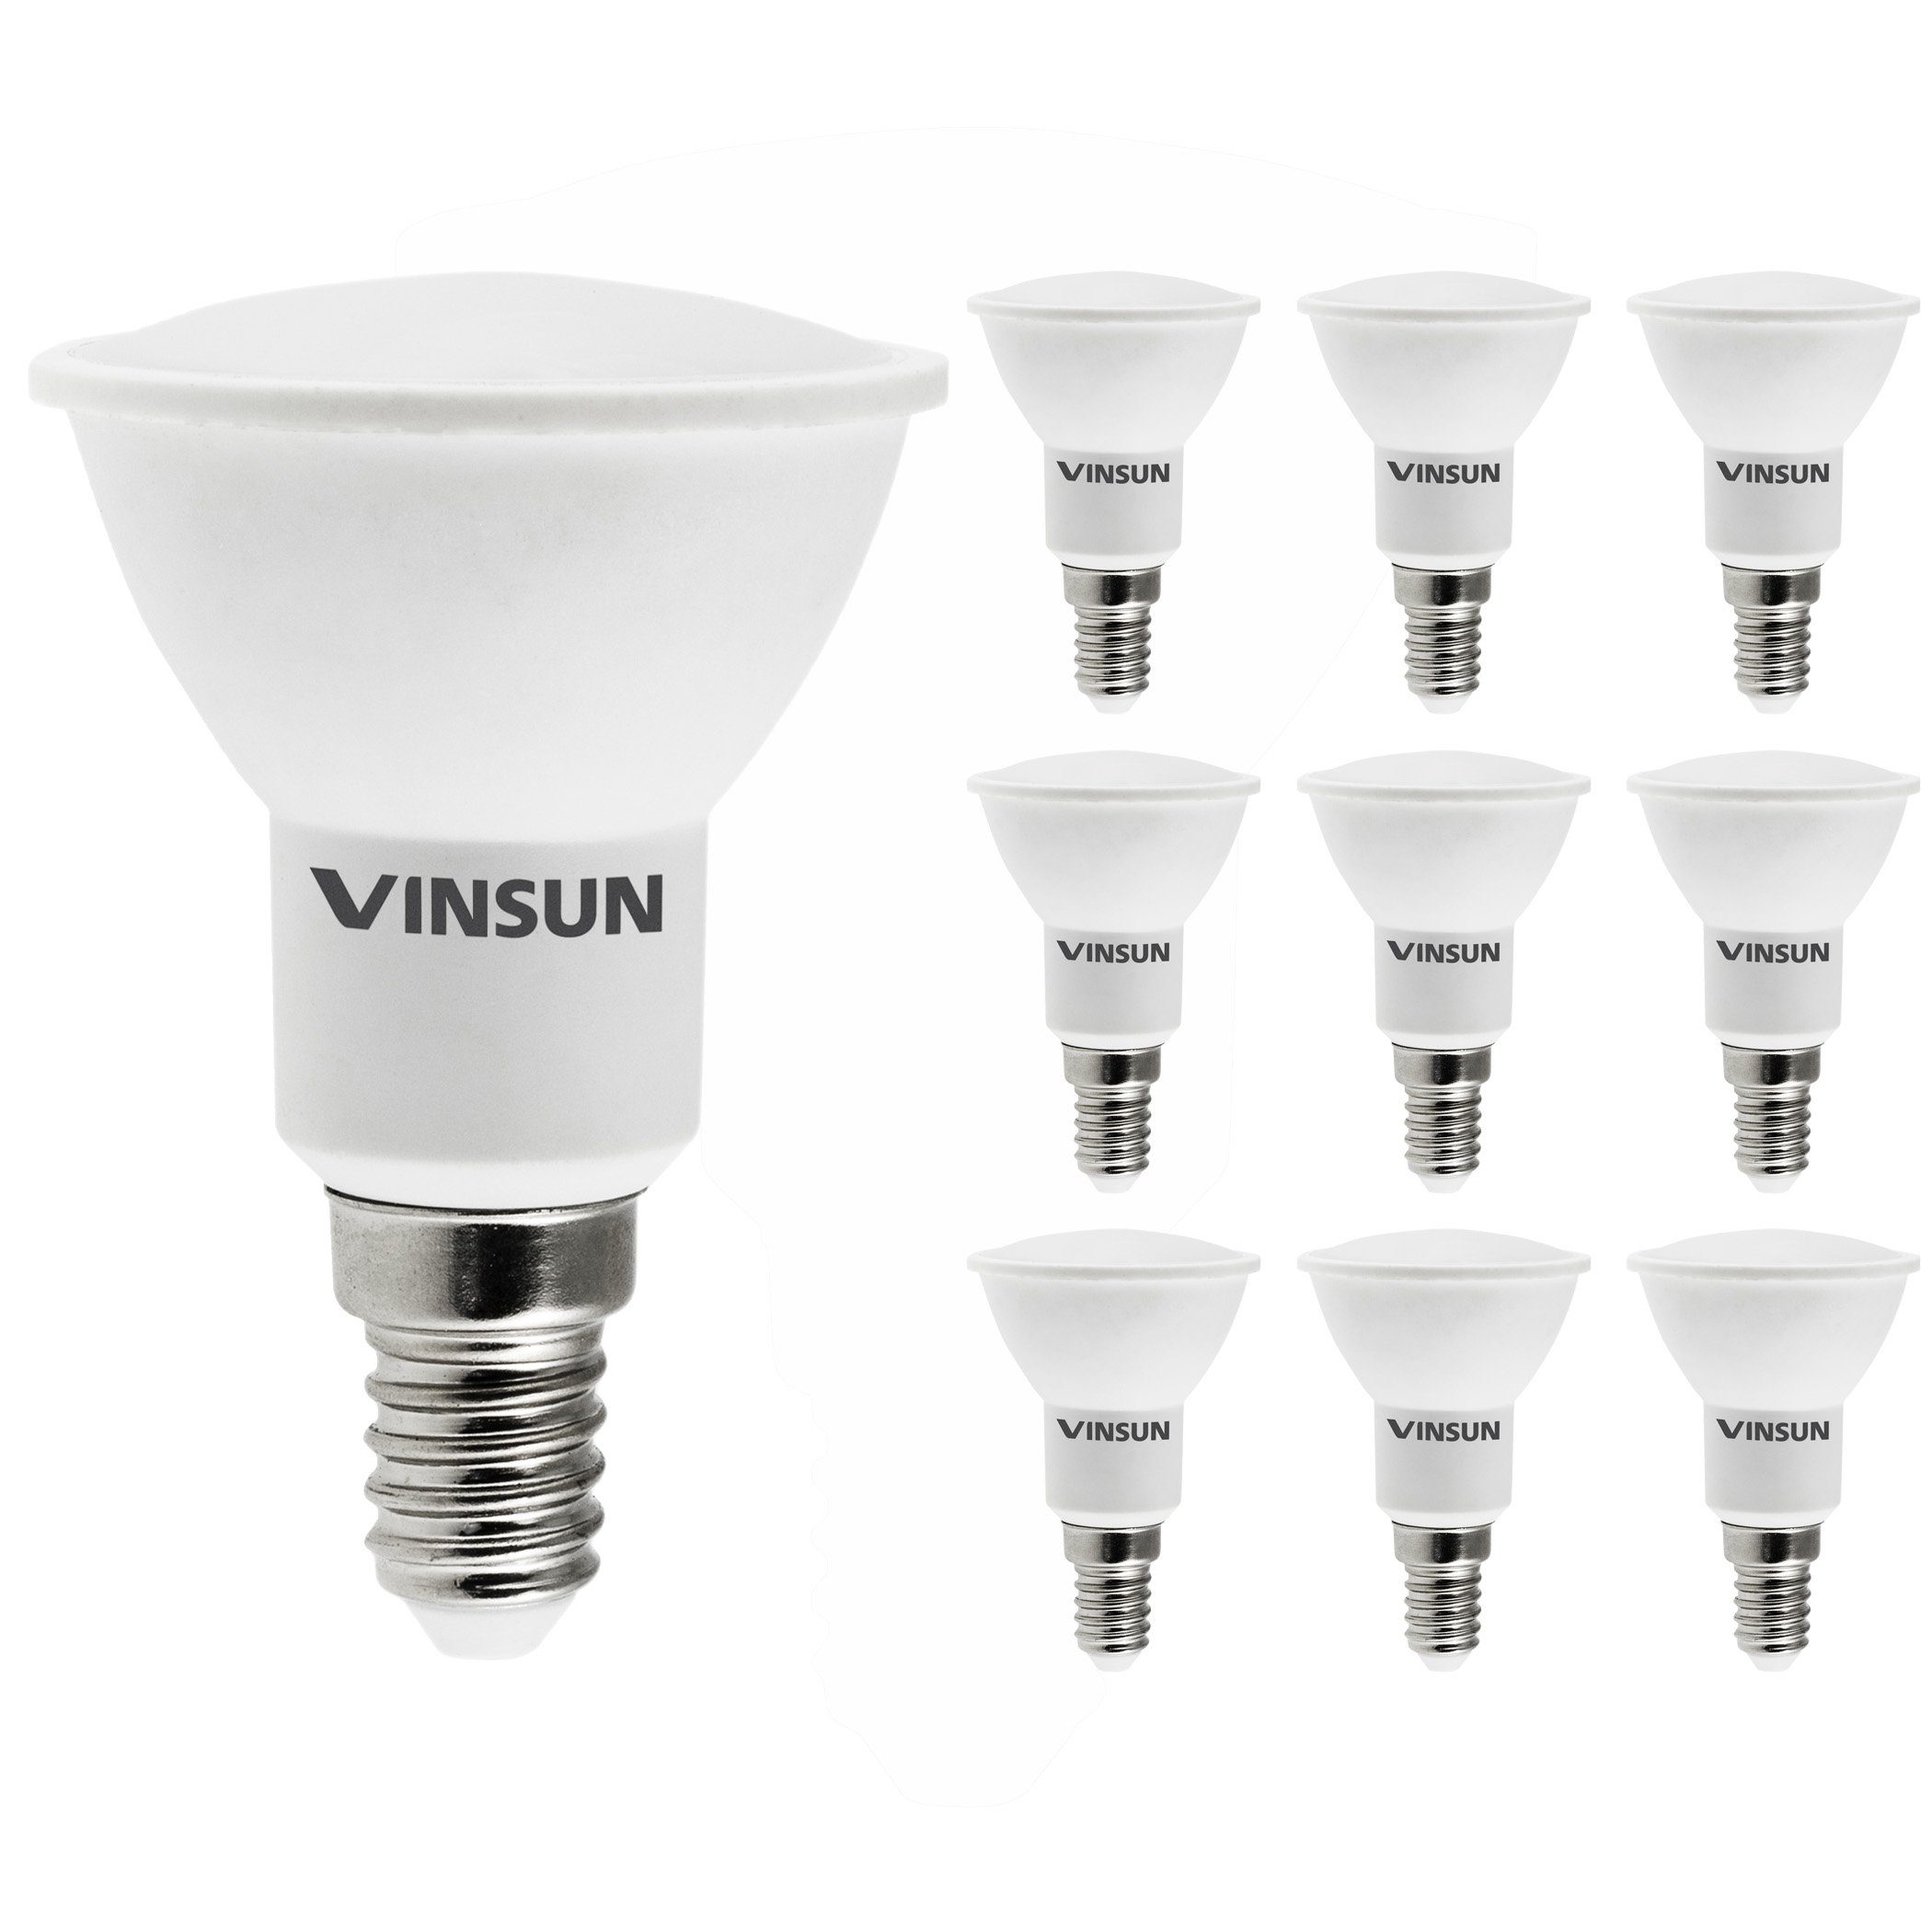 Vinsun LED-Leuchtmittel E14 LED Lampe 5W Leuchtmittel warmweiß 2900K Reflektor - 10er Pack